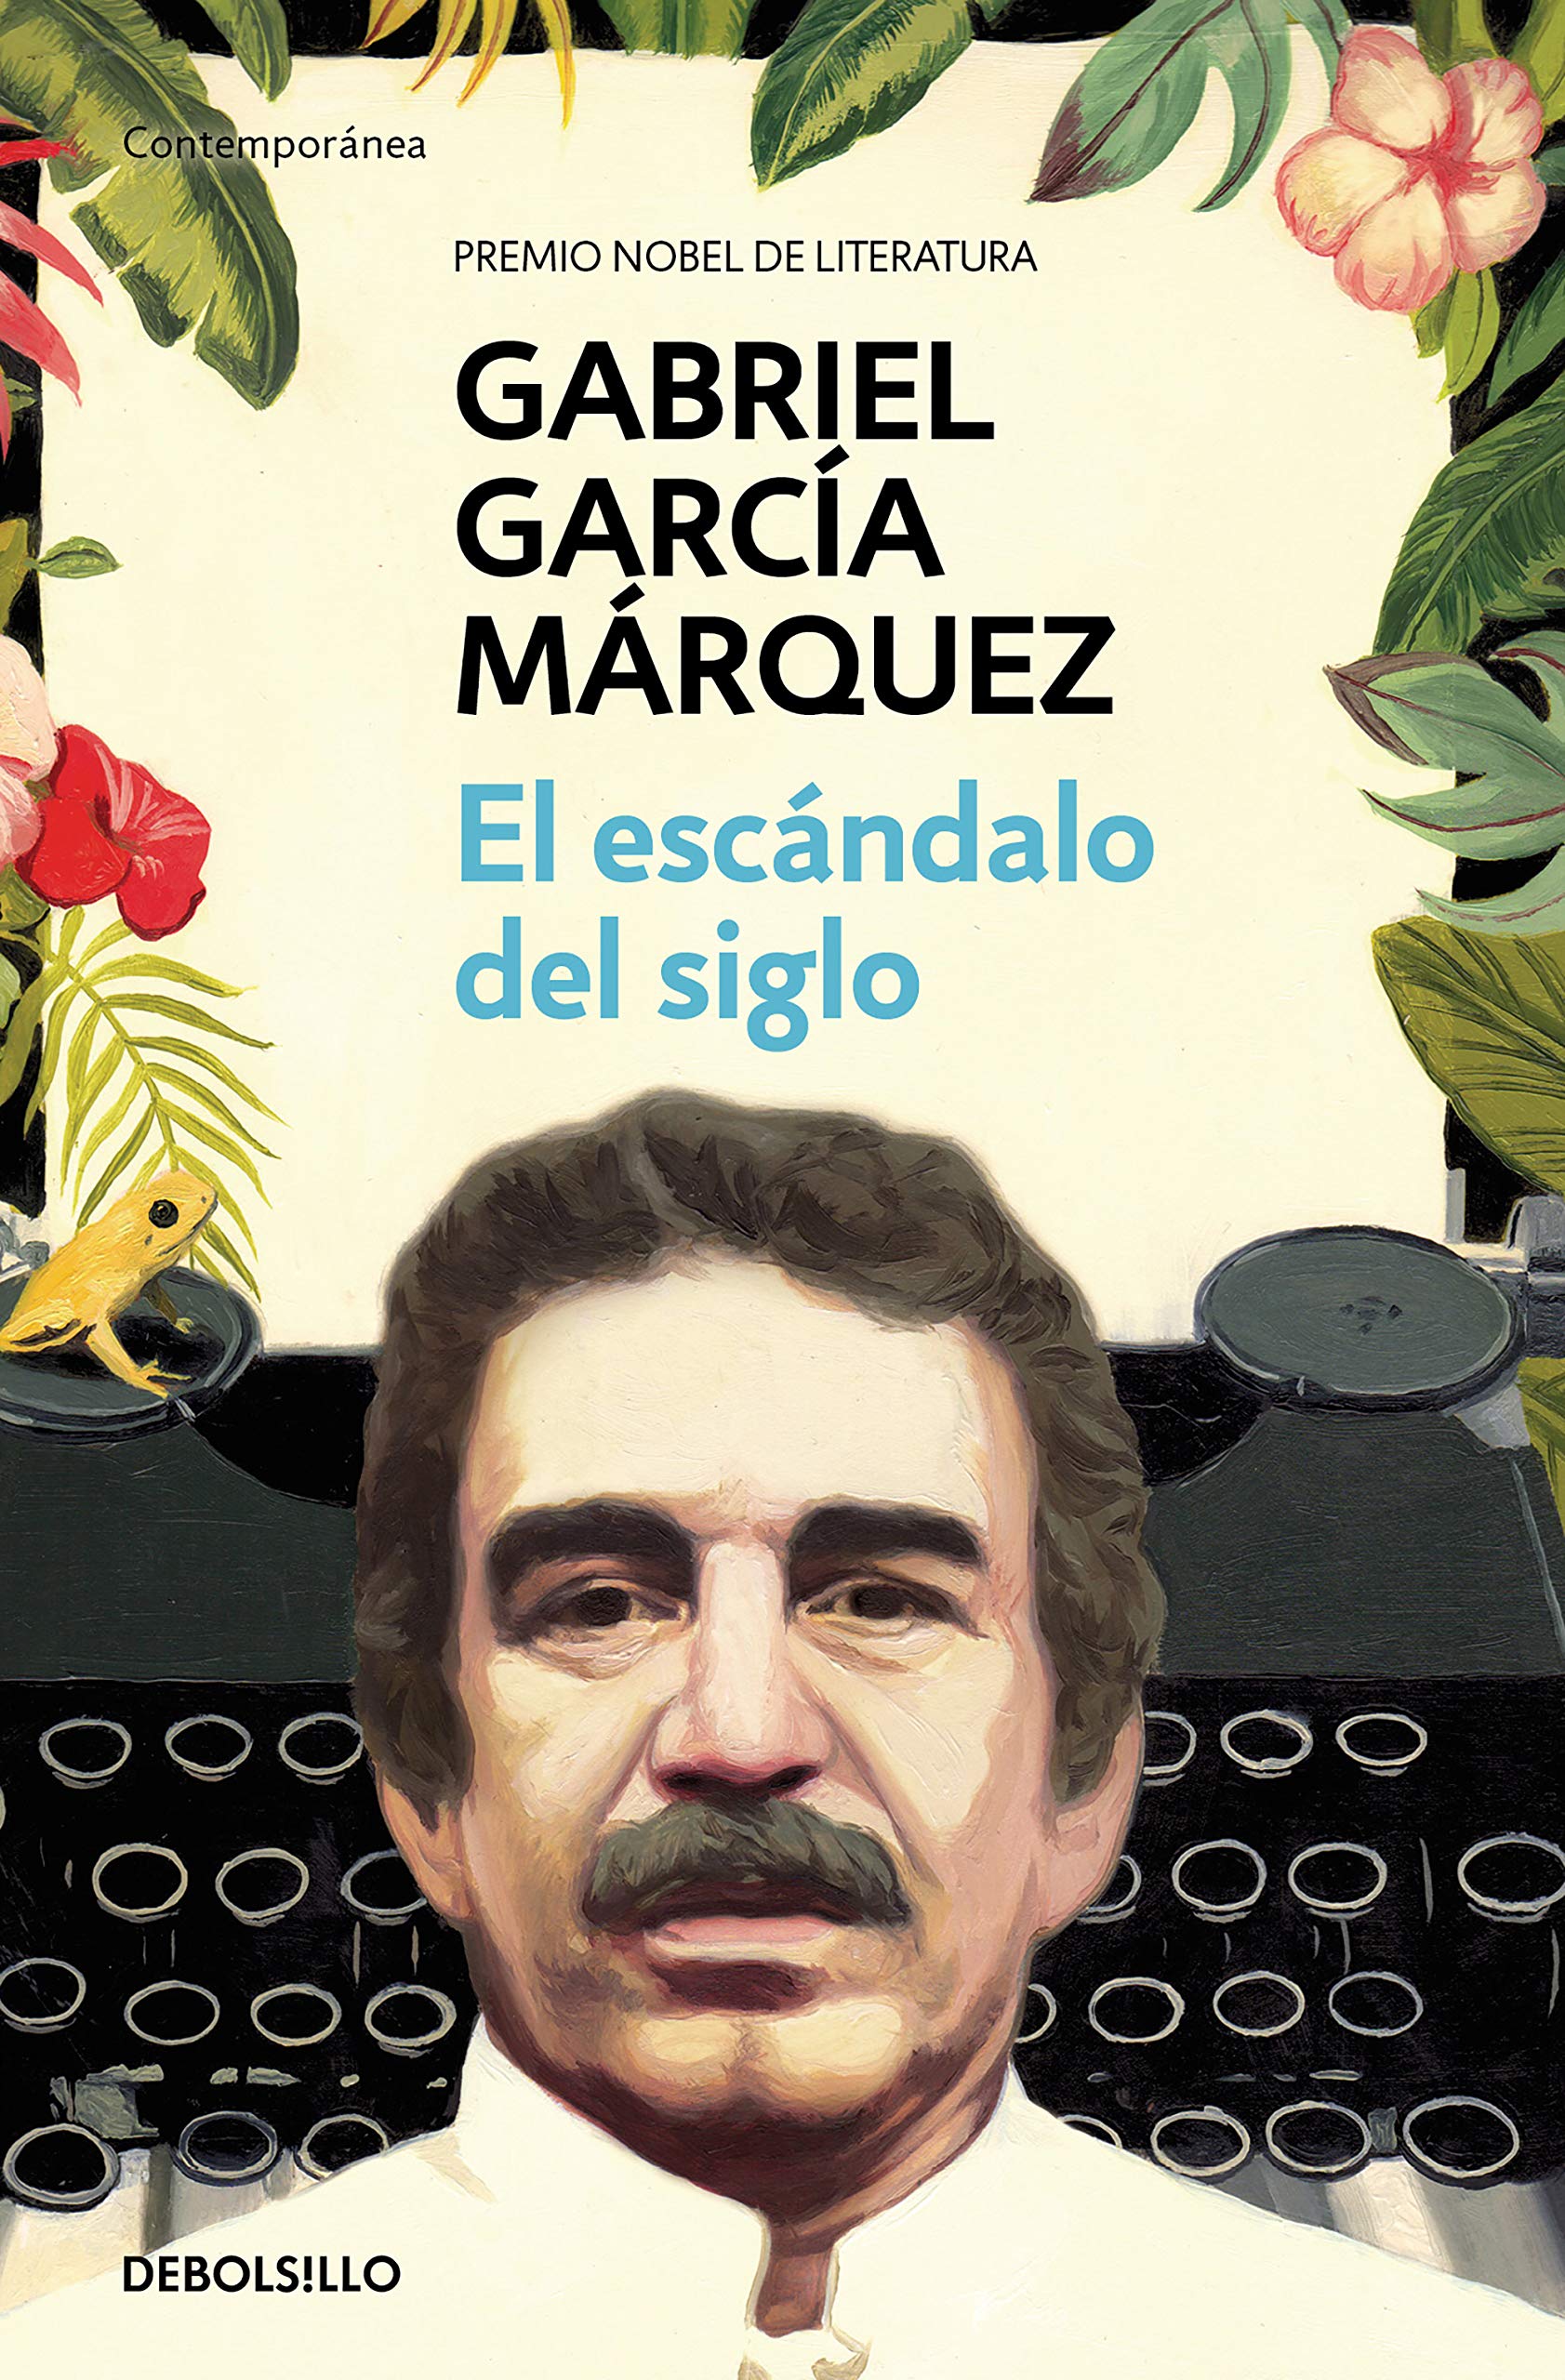 Zenda recomienda: El escándalo del siglo, de Gabriel García Márquez